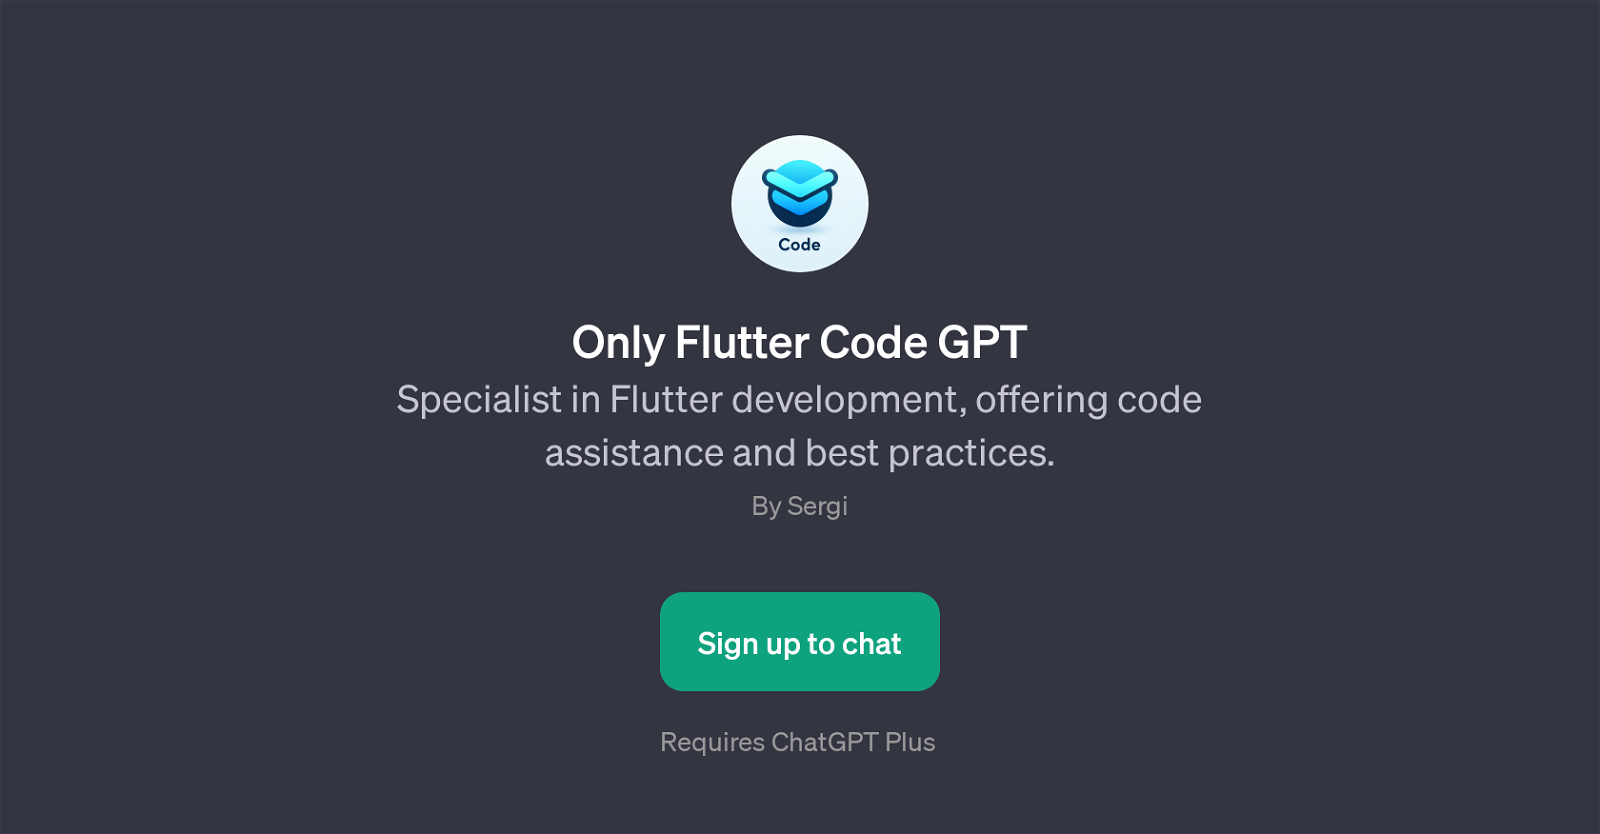 Only Flutter Code GPT website